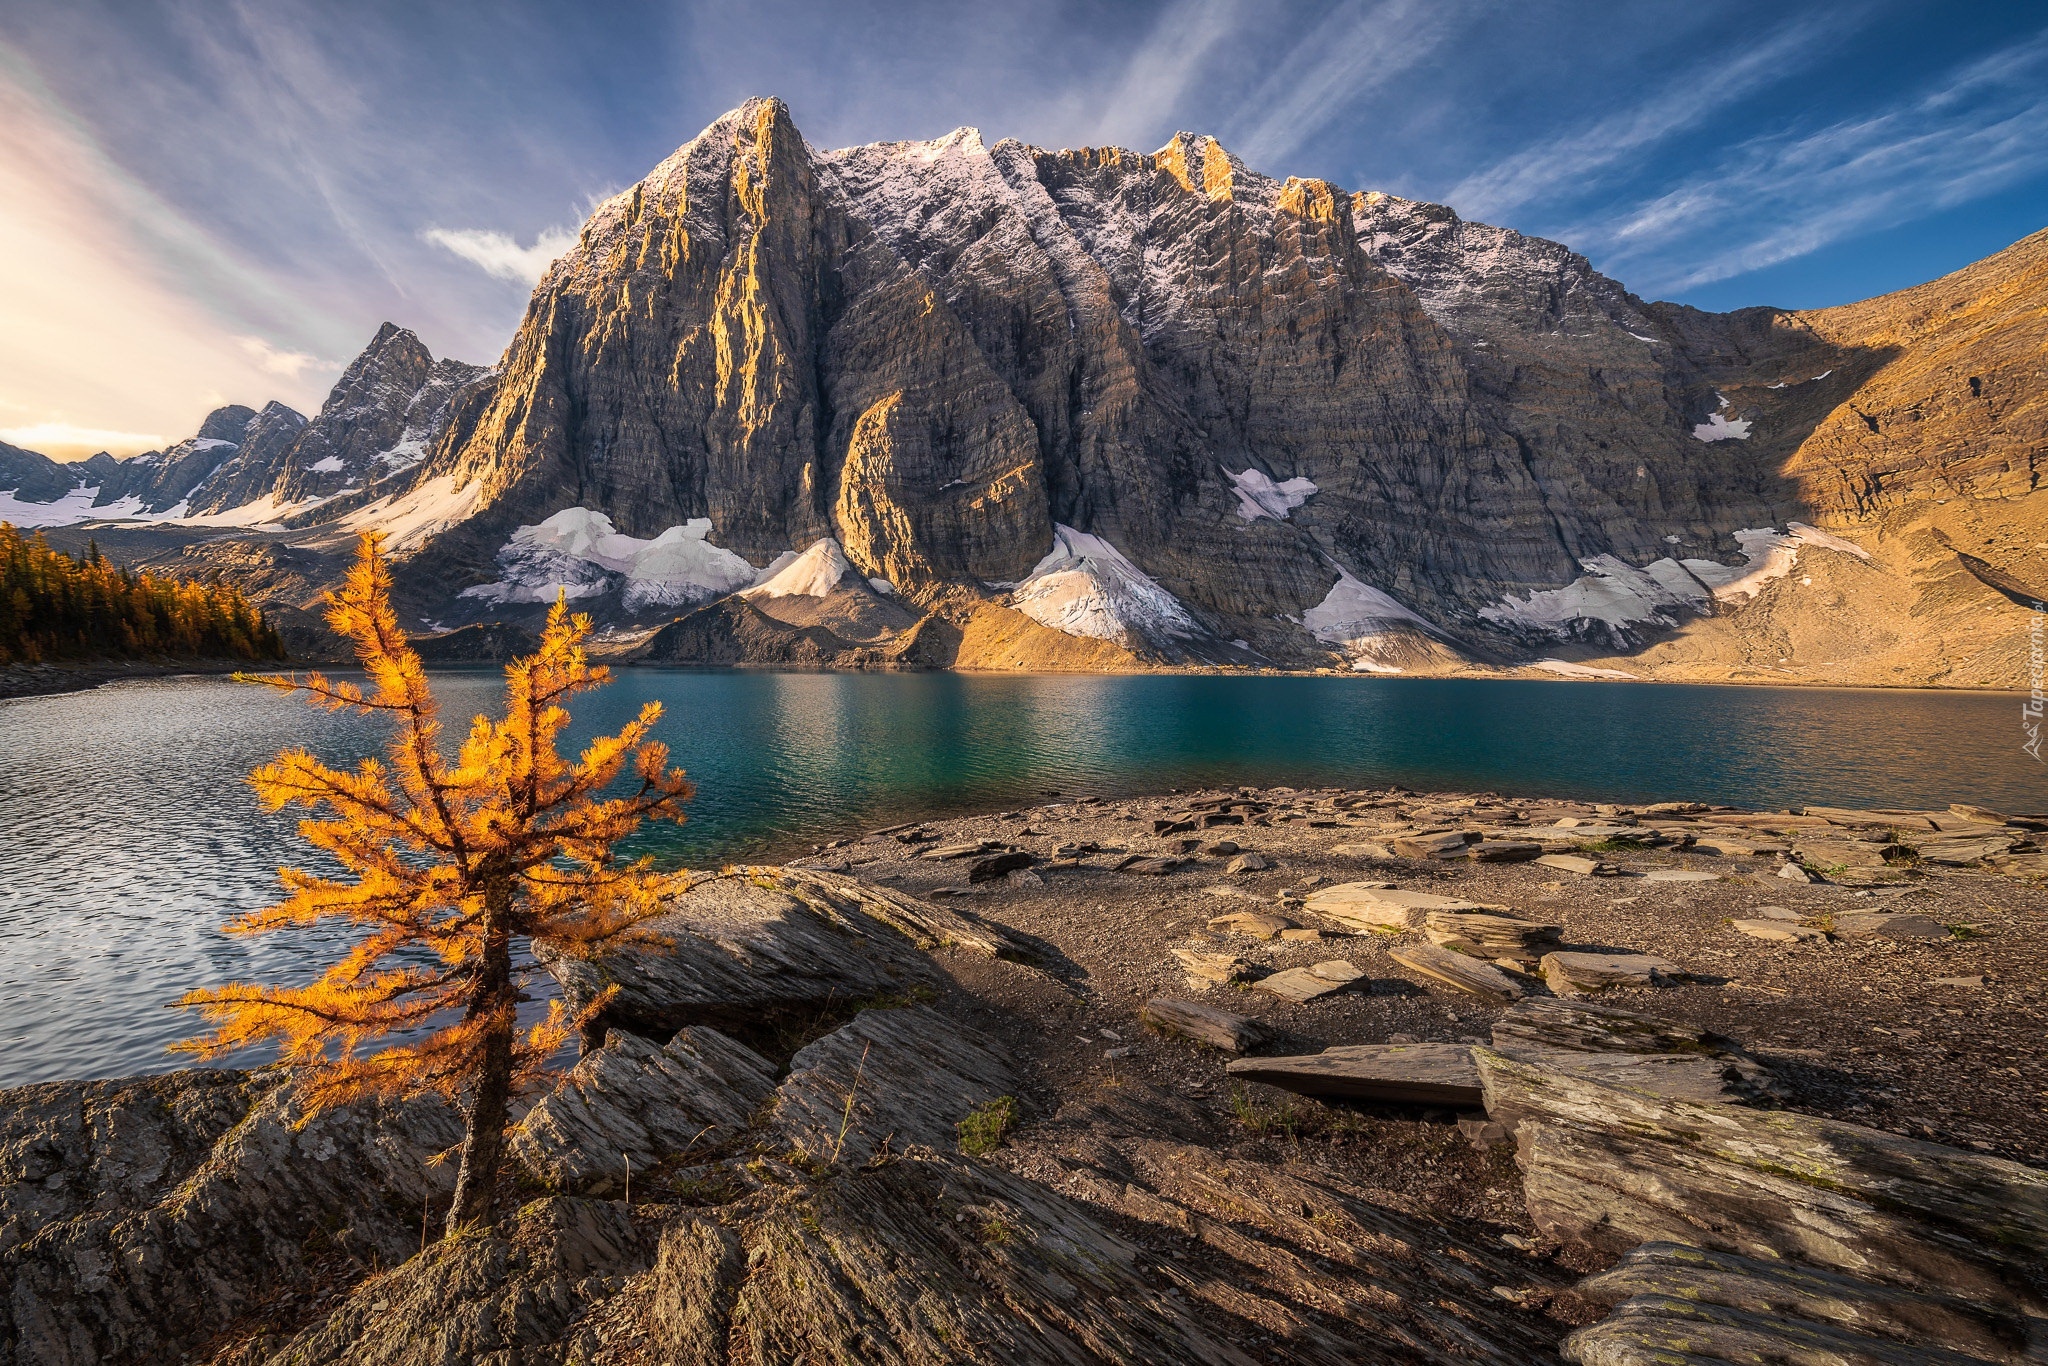 Jezioro Moraine, Góry, Drzewo, Park Narodowy Banff, Alberta, Kanada